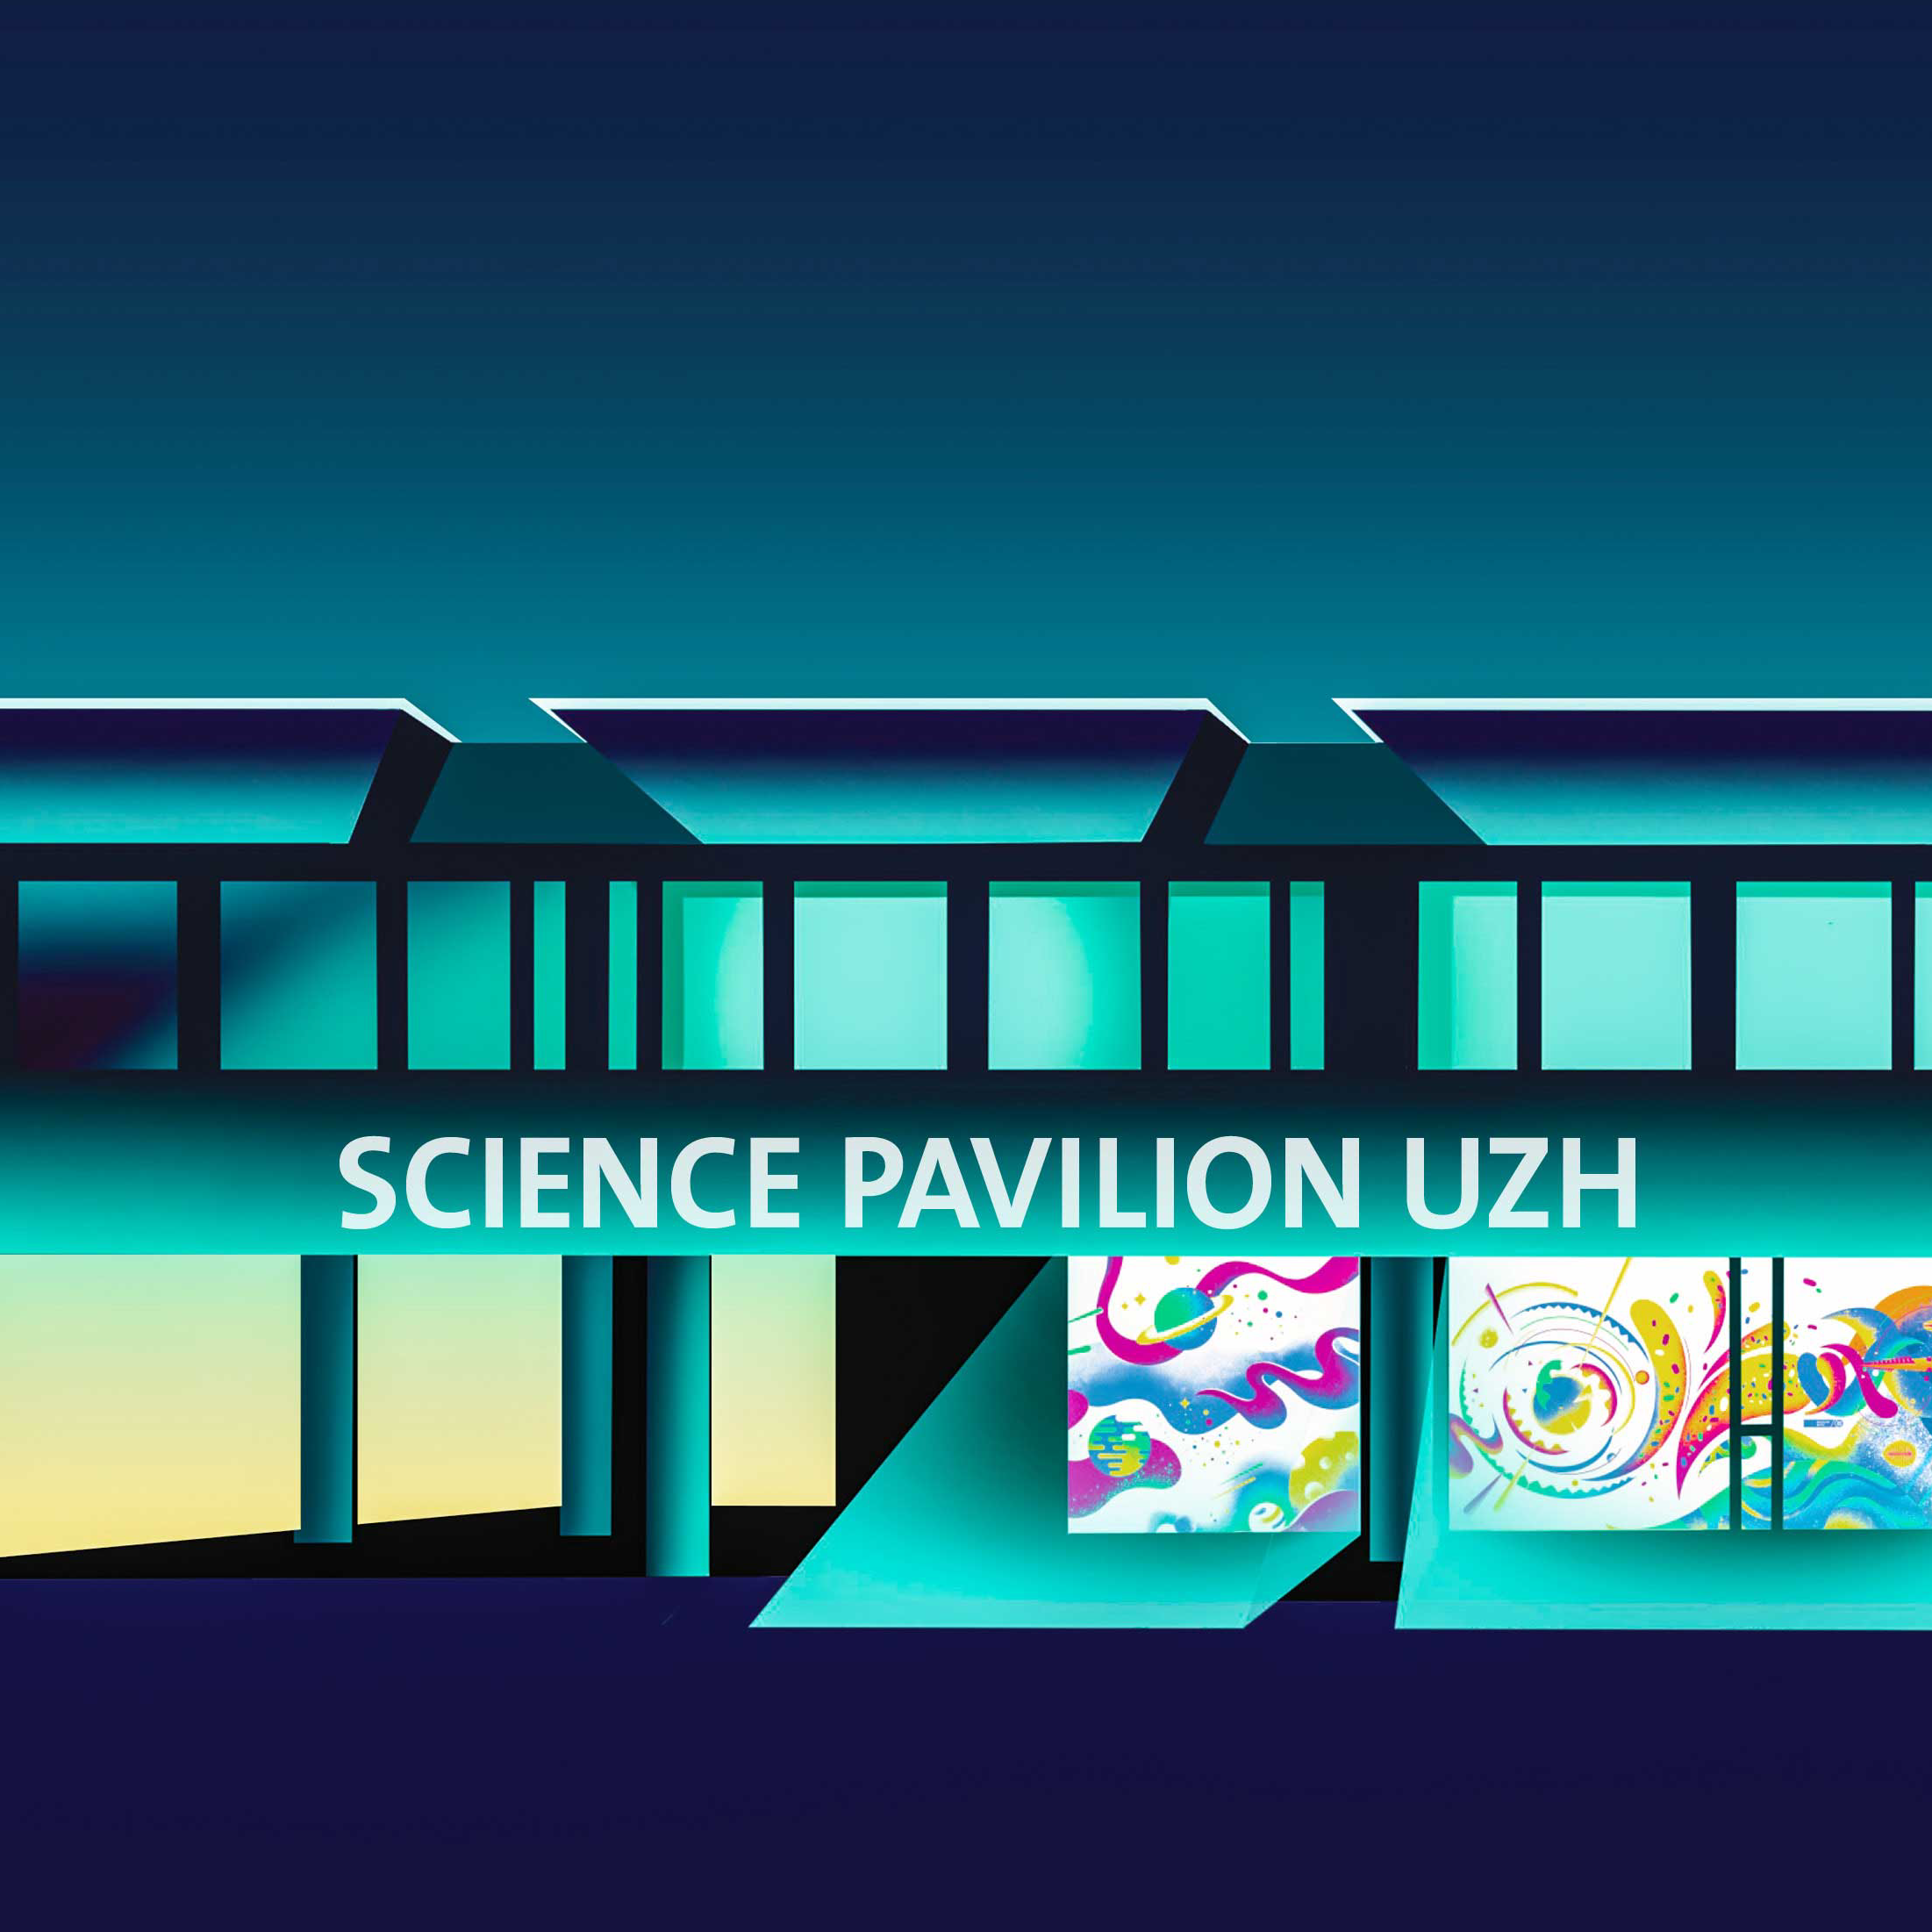 Illustration des Science Pavilion UZH. Das Bild ist hauptsächlich blau und marineblau und das bunte Fenster des Museums hebt sich heller ab.